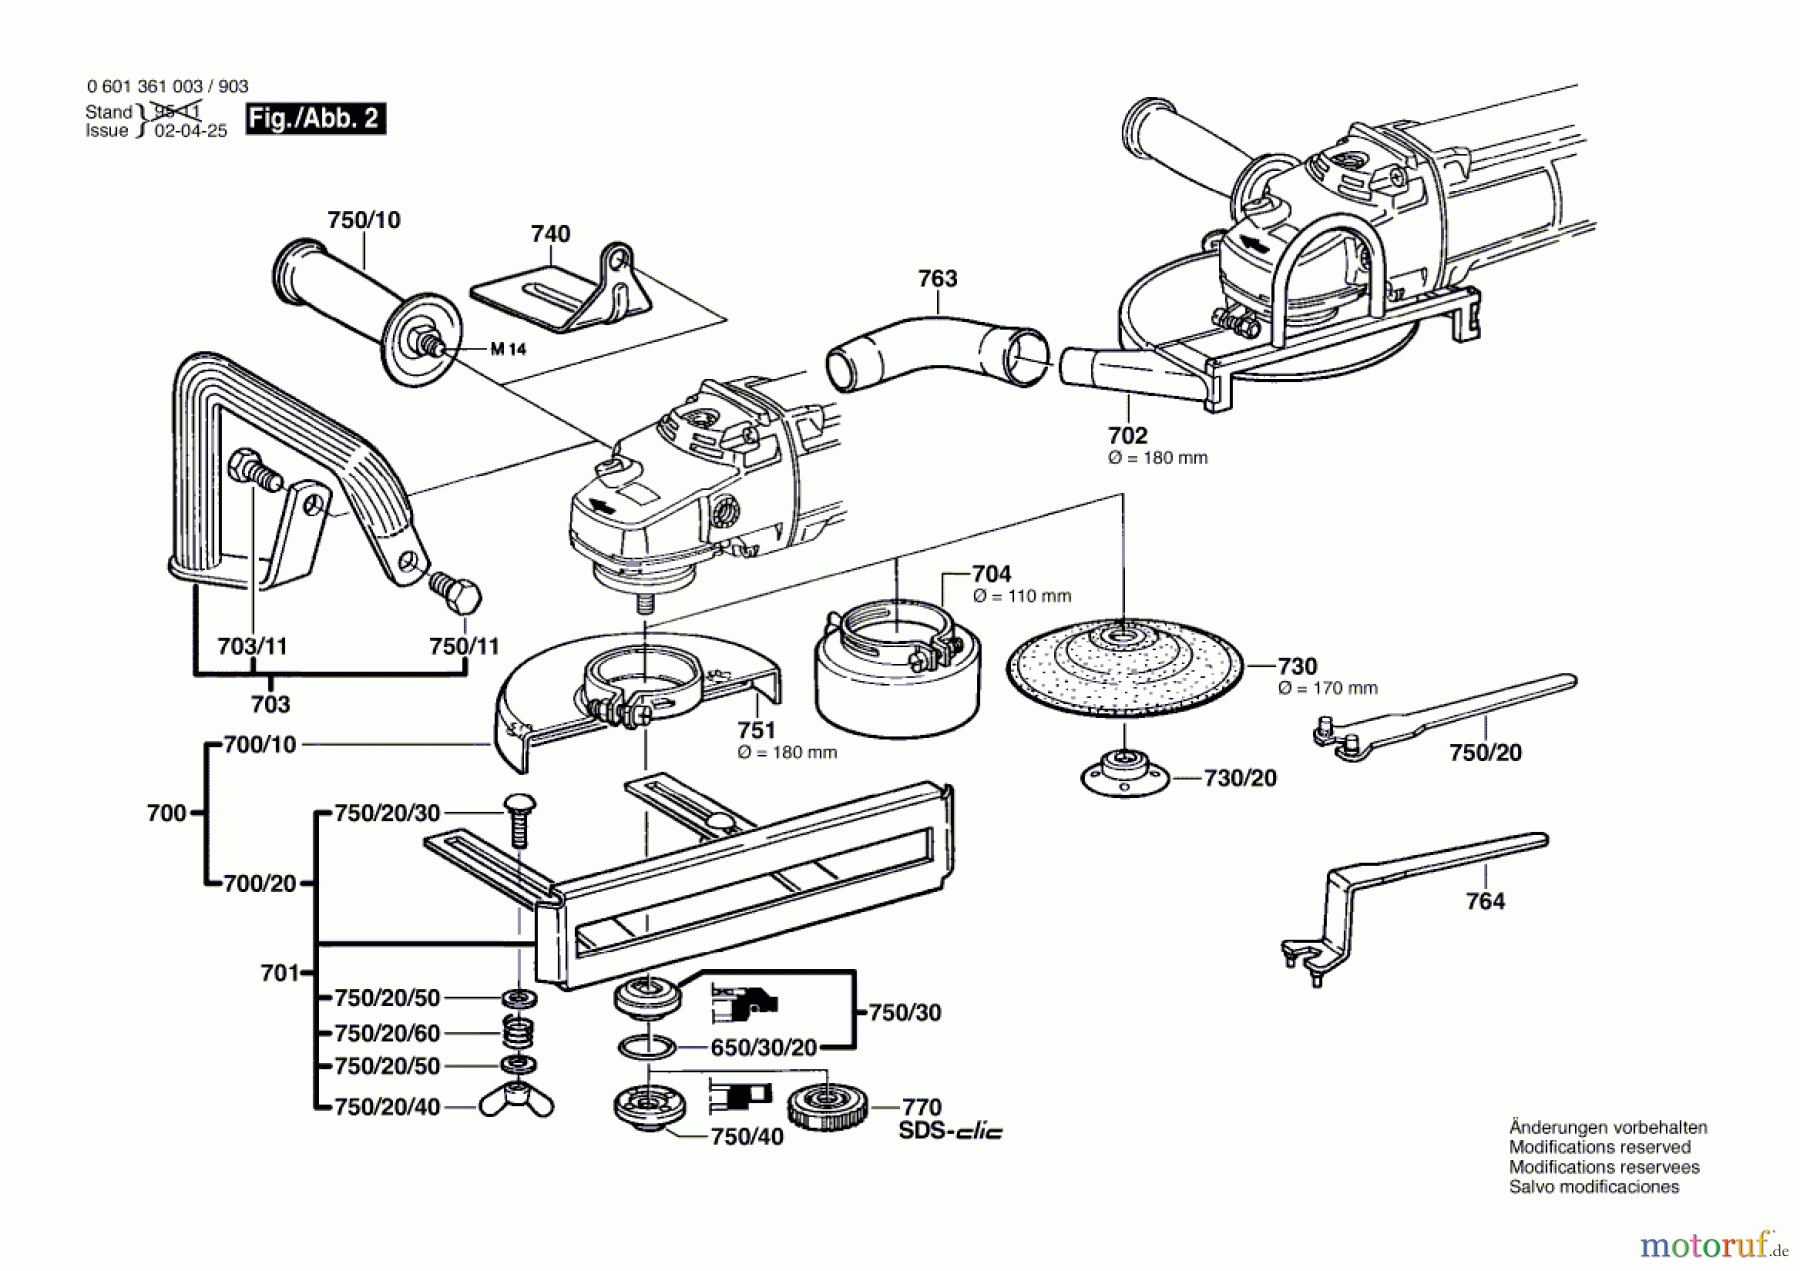  Bosch Werkzeug Winkelschleifer GWS 23-180 Seite 2